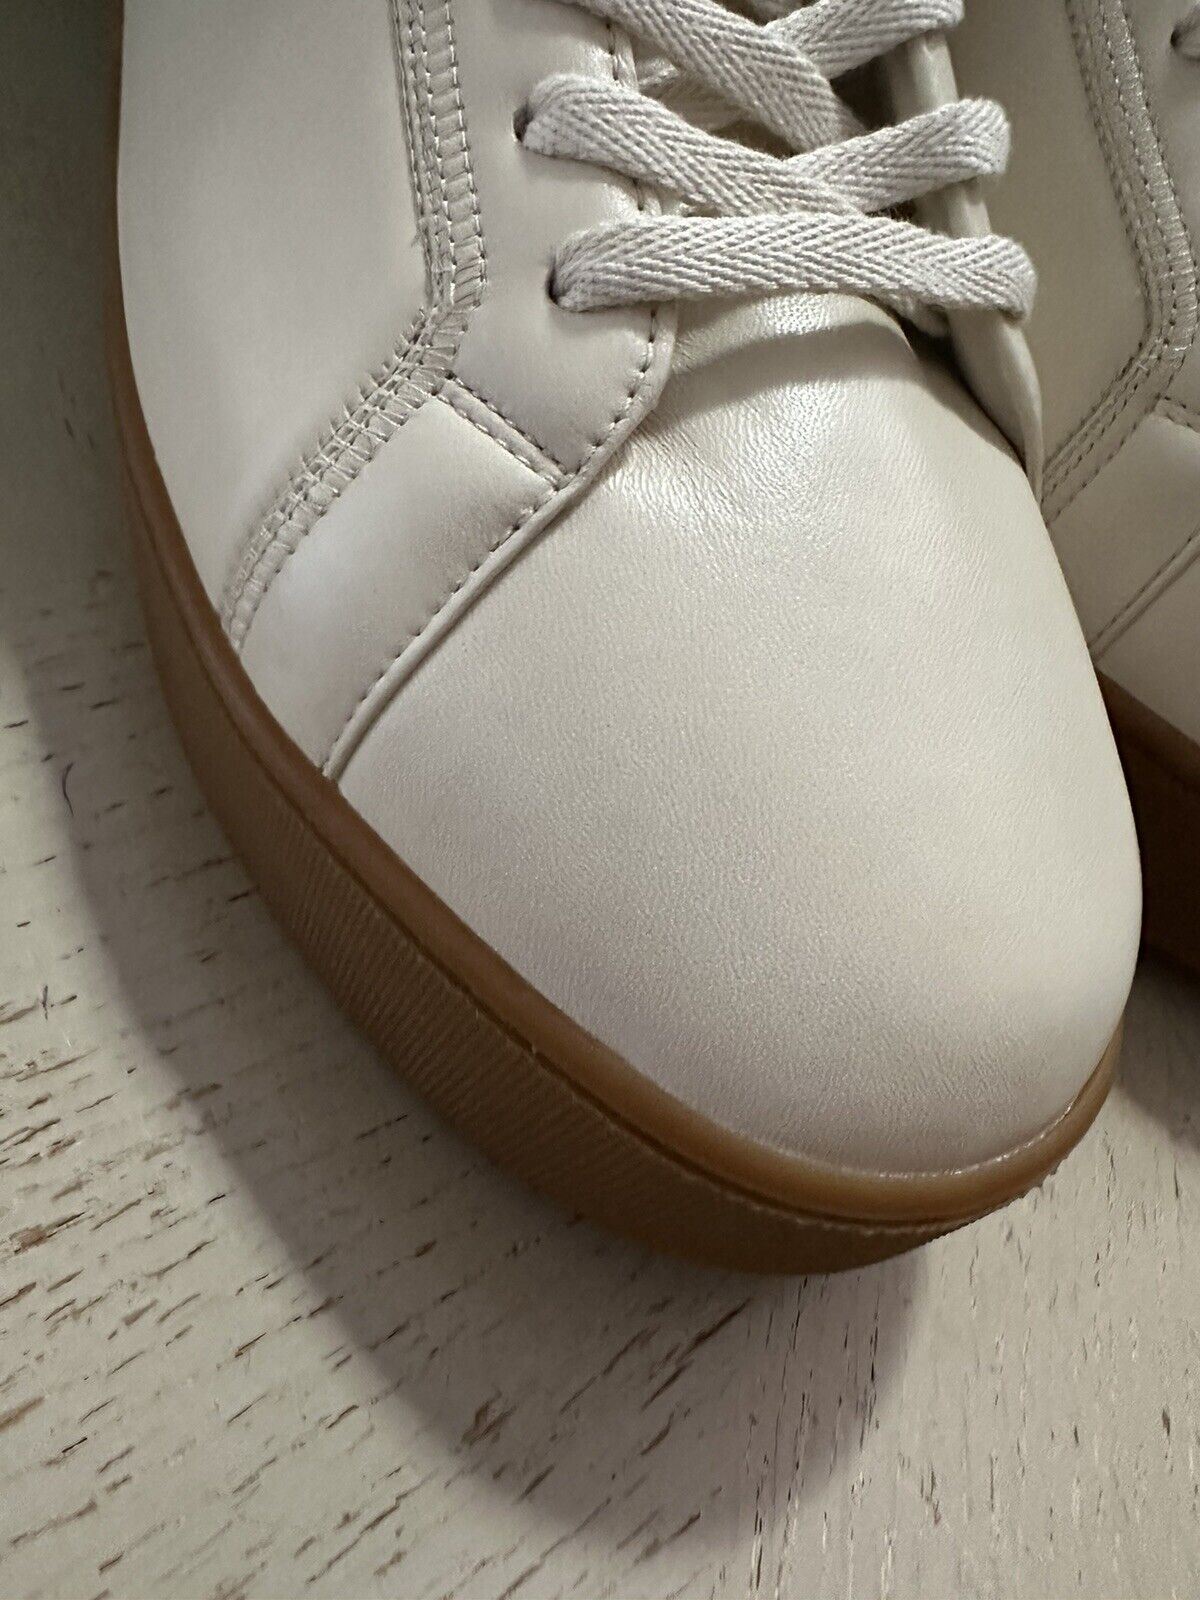 NIB 950 $ Bottega Veneta Herren-Leder-High-Top-Sneaker-Schuhe Weiß 9 US/42 Eu